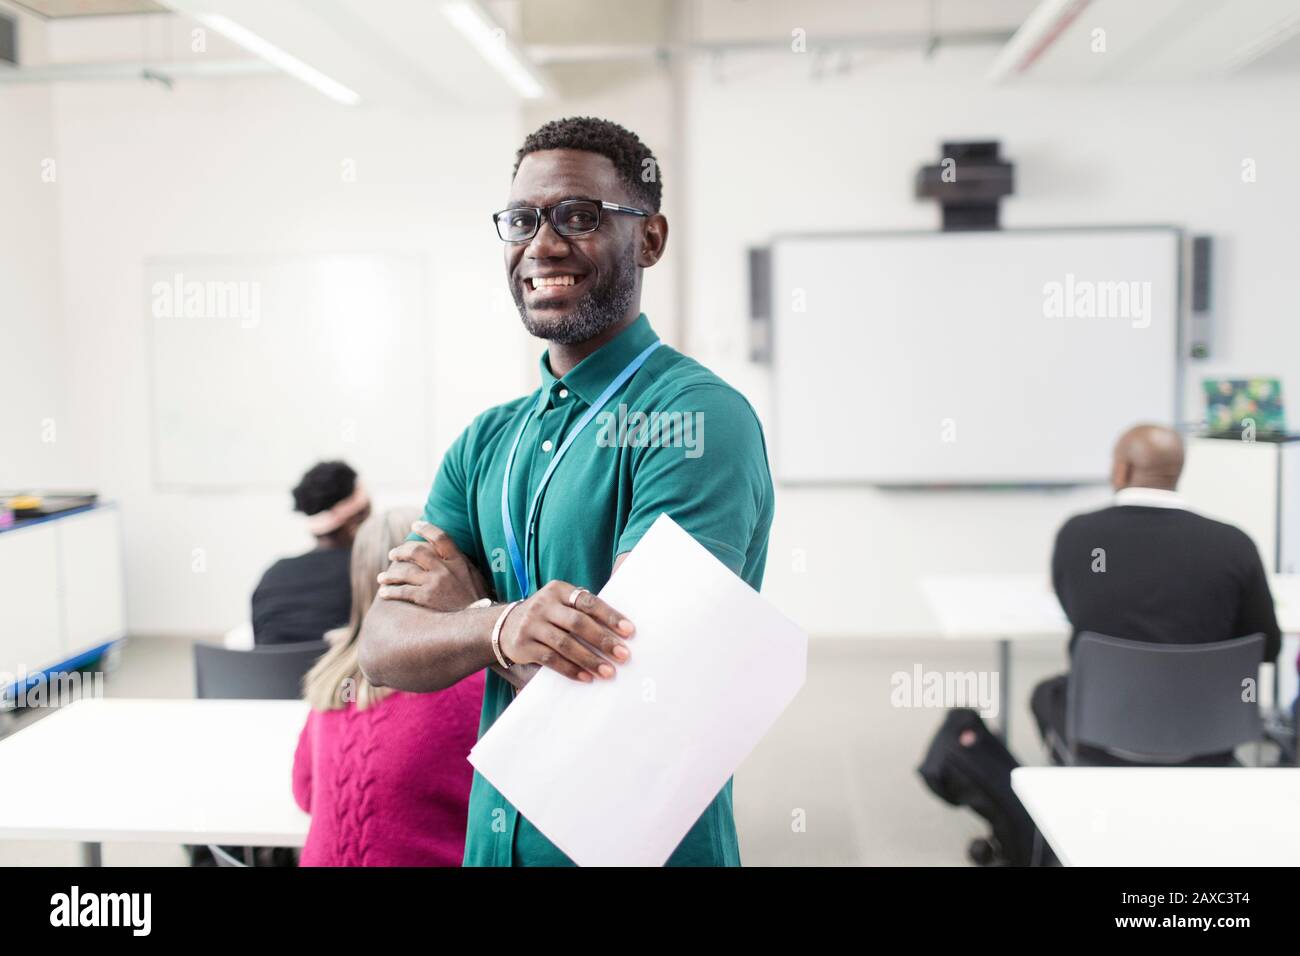 Portrait lächelnde, selbstbewusste männliche Community College-Dozentin im Klassenzimmer Stockfoto